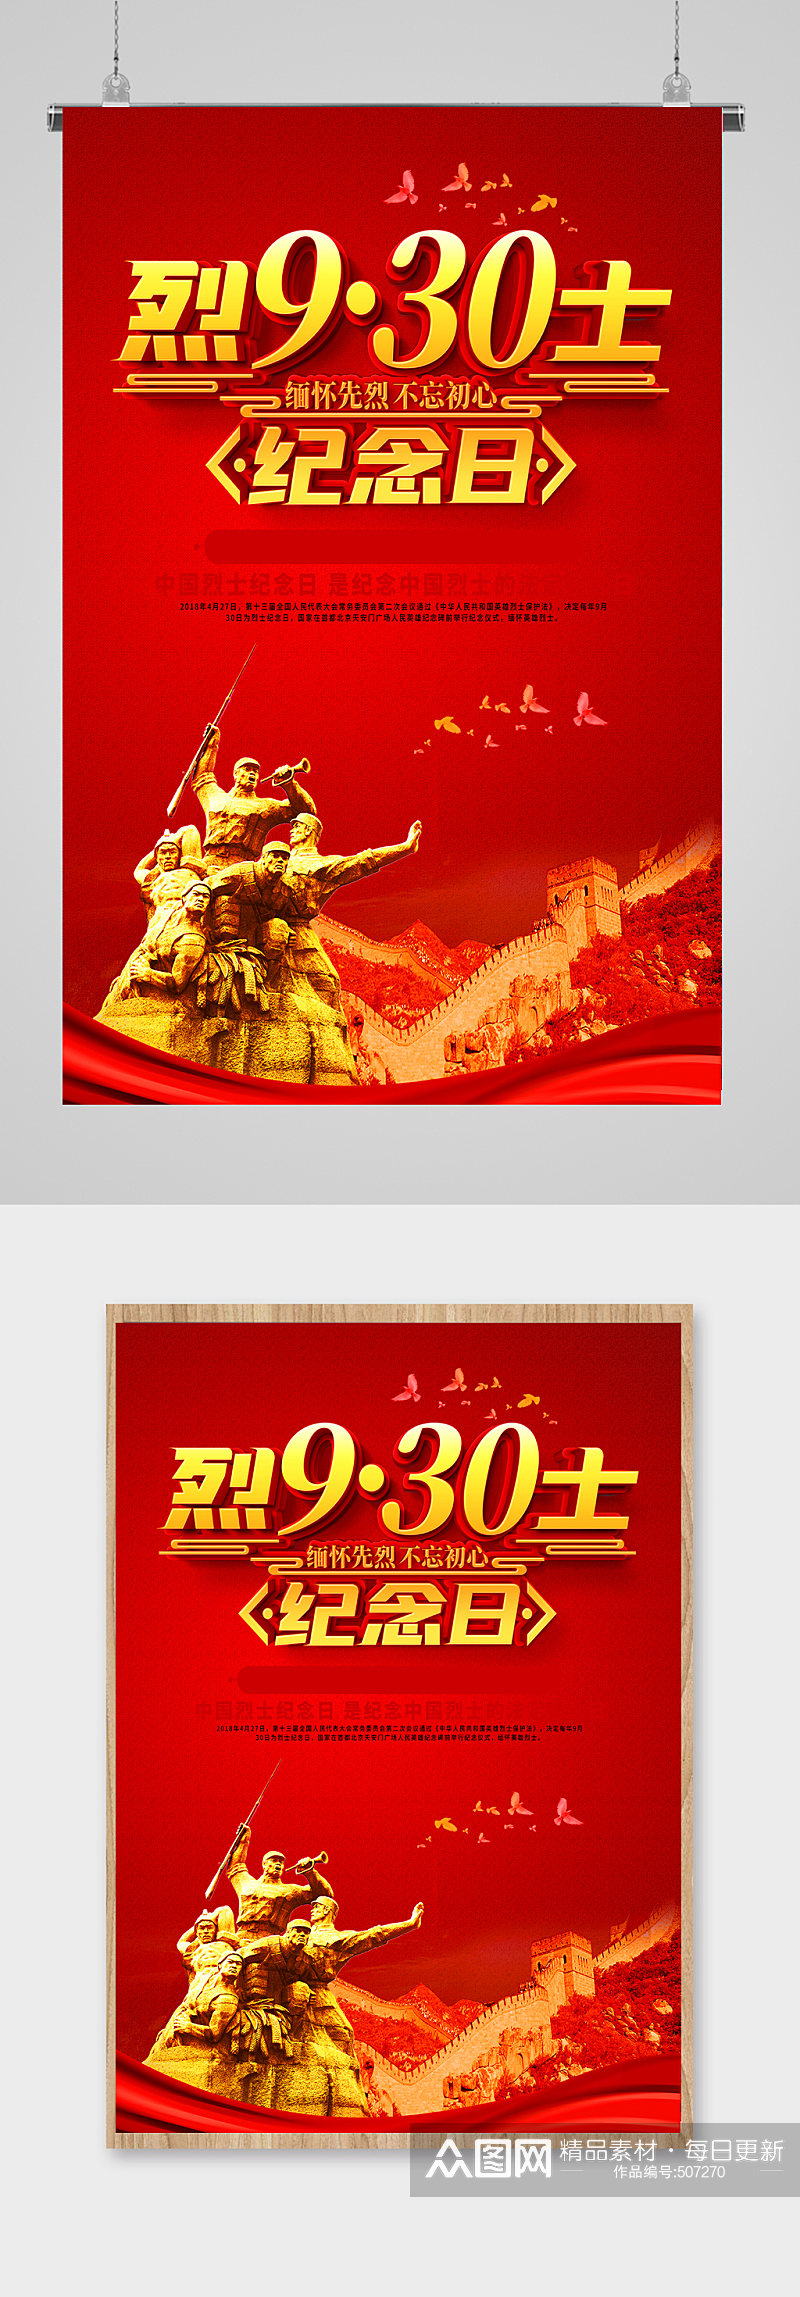 红色中国烈士纪念日海报素材